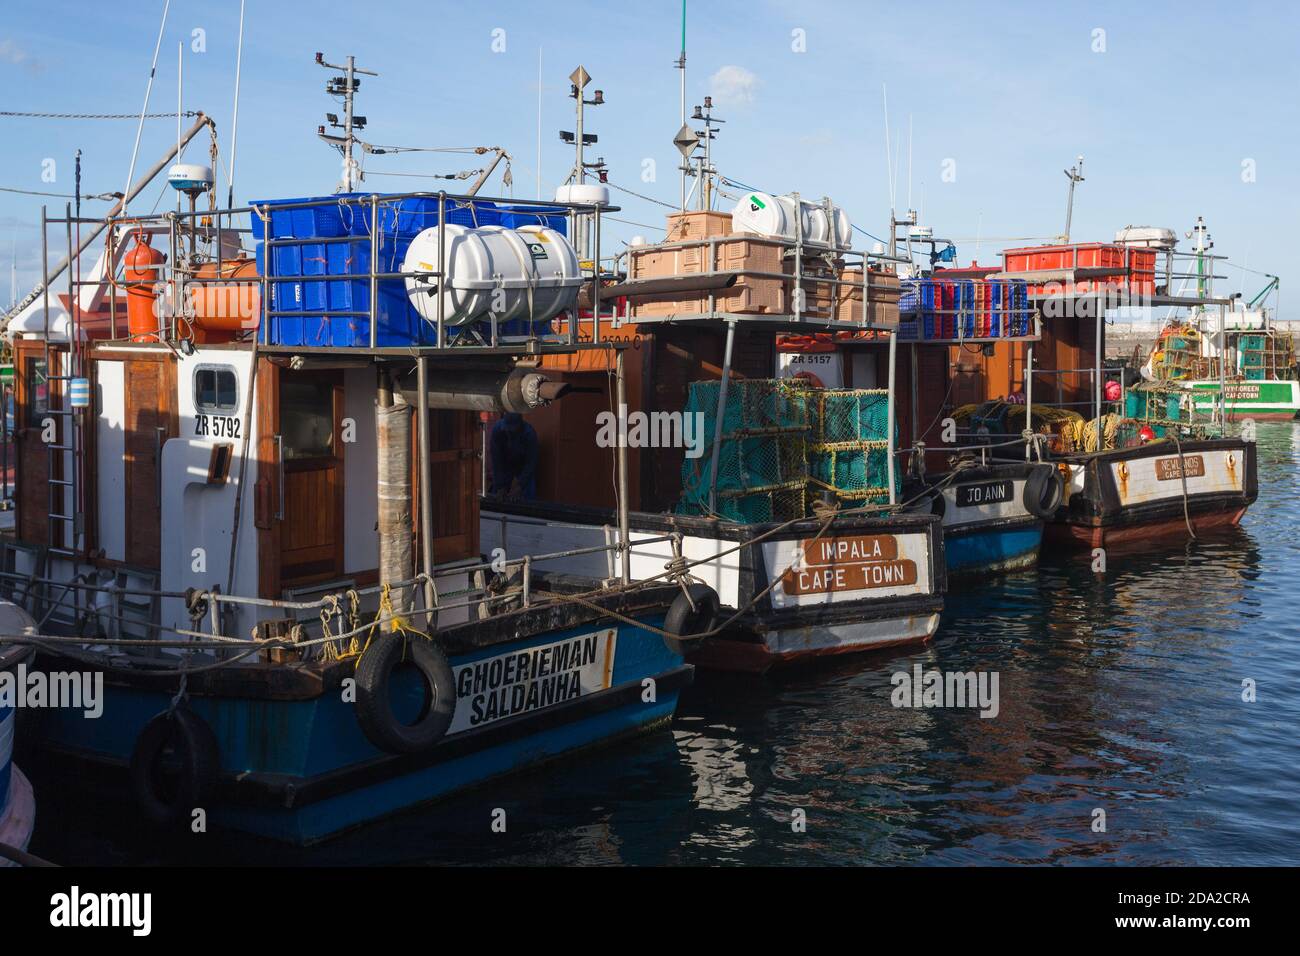 Fischerboote oder Schiffe in einer Reihe oder Reihe in Kalk Bay Hafen, Kapstadt, Südafrika Konzept kommerzielle Fischerei in Afrika Stockfoto